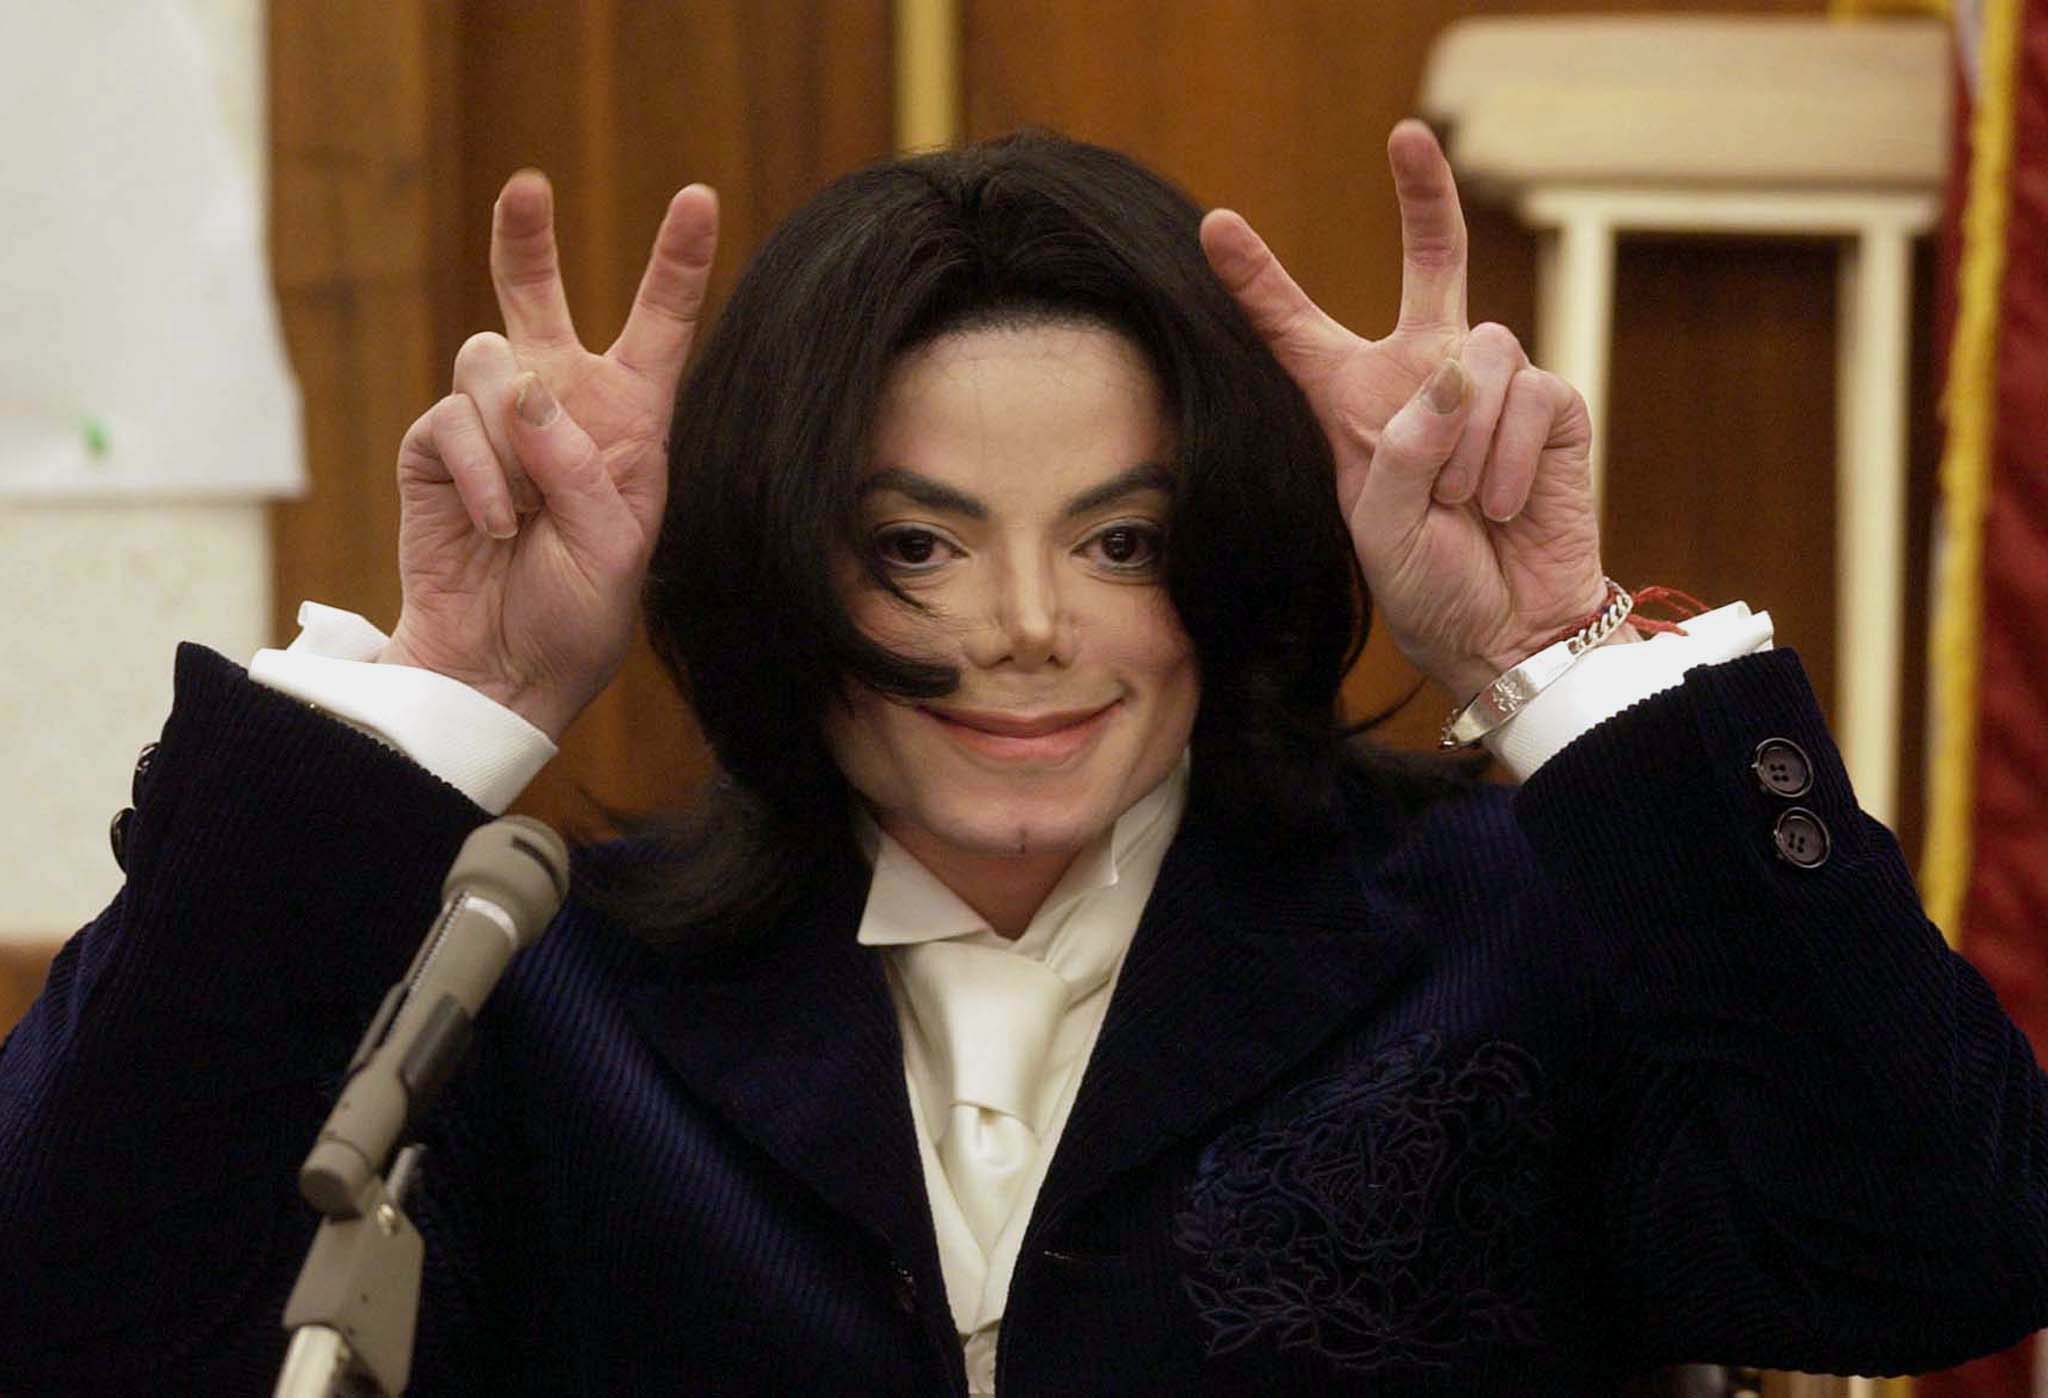 Майкл Джексон (Michael Jackson). Біографія. Фото. Особисте життя